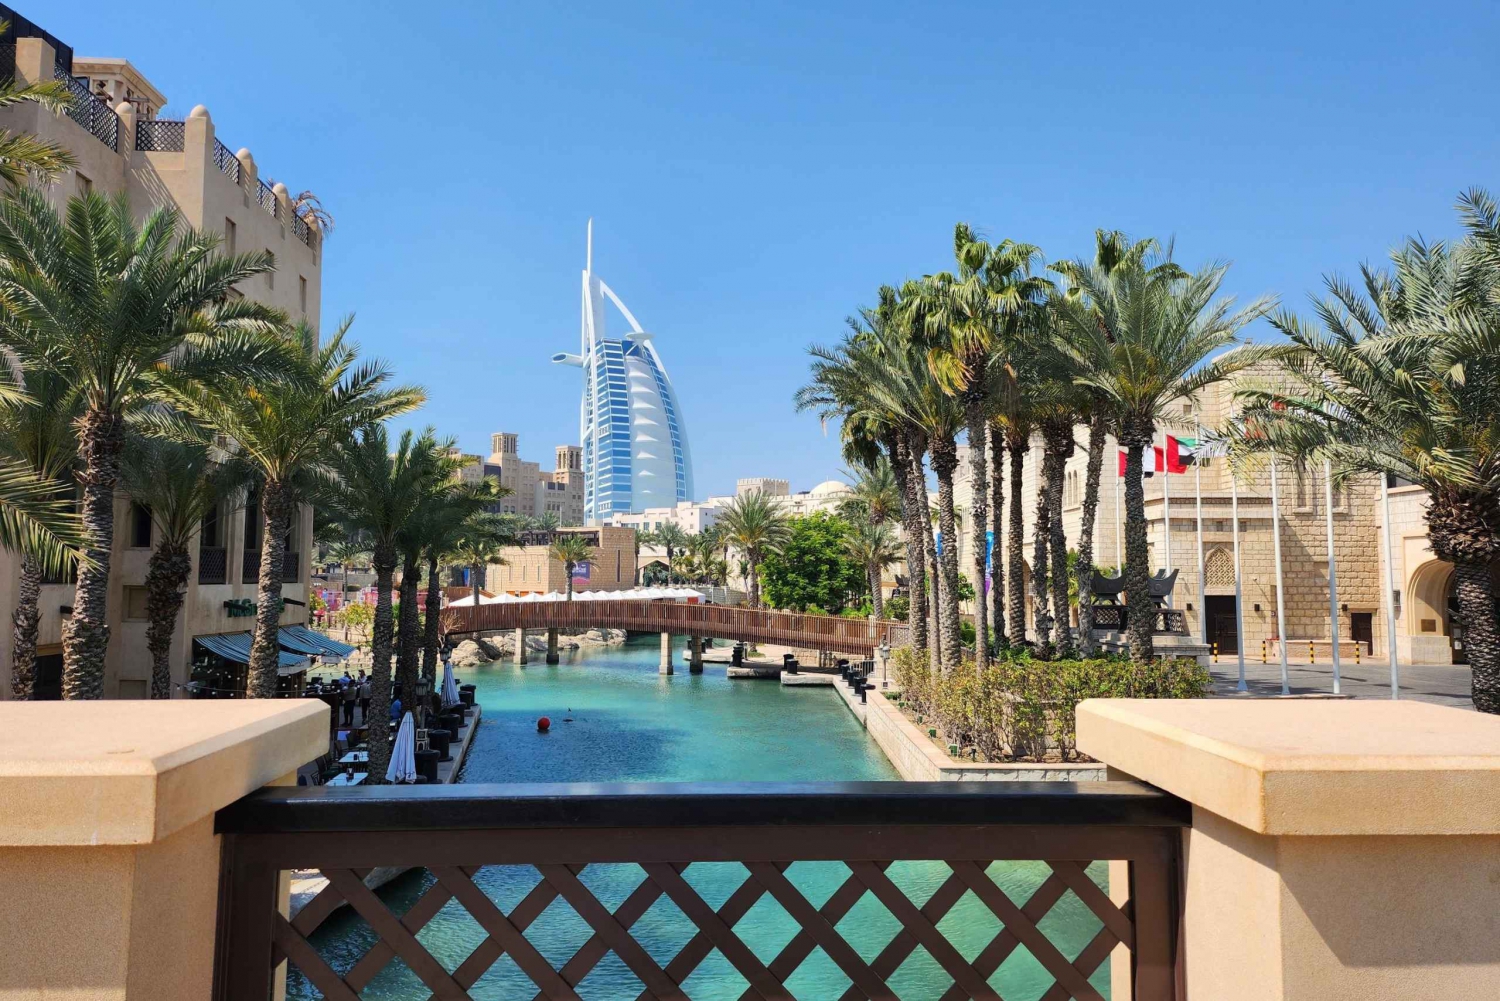 Dubai: punti salienti della città, ingresso frame, souk e moschea blu